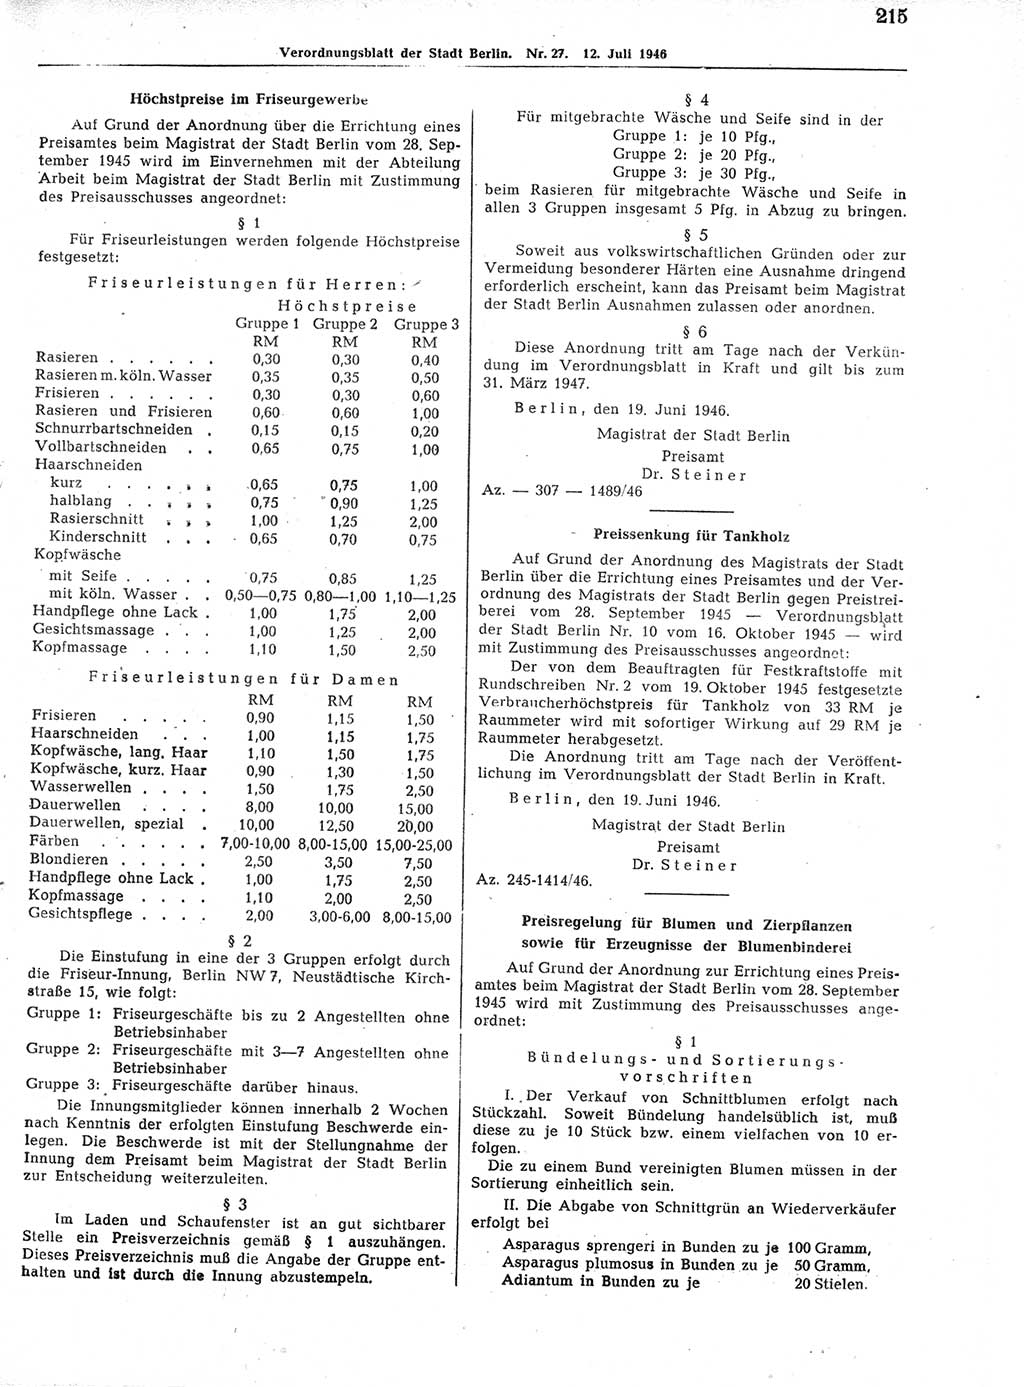 Verordnungsblatt (VOBl.) der Stadt Berlin, für Groß-Berlin 1946, Seite 215 (VOBl. Bln. 1946, S. 215)